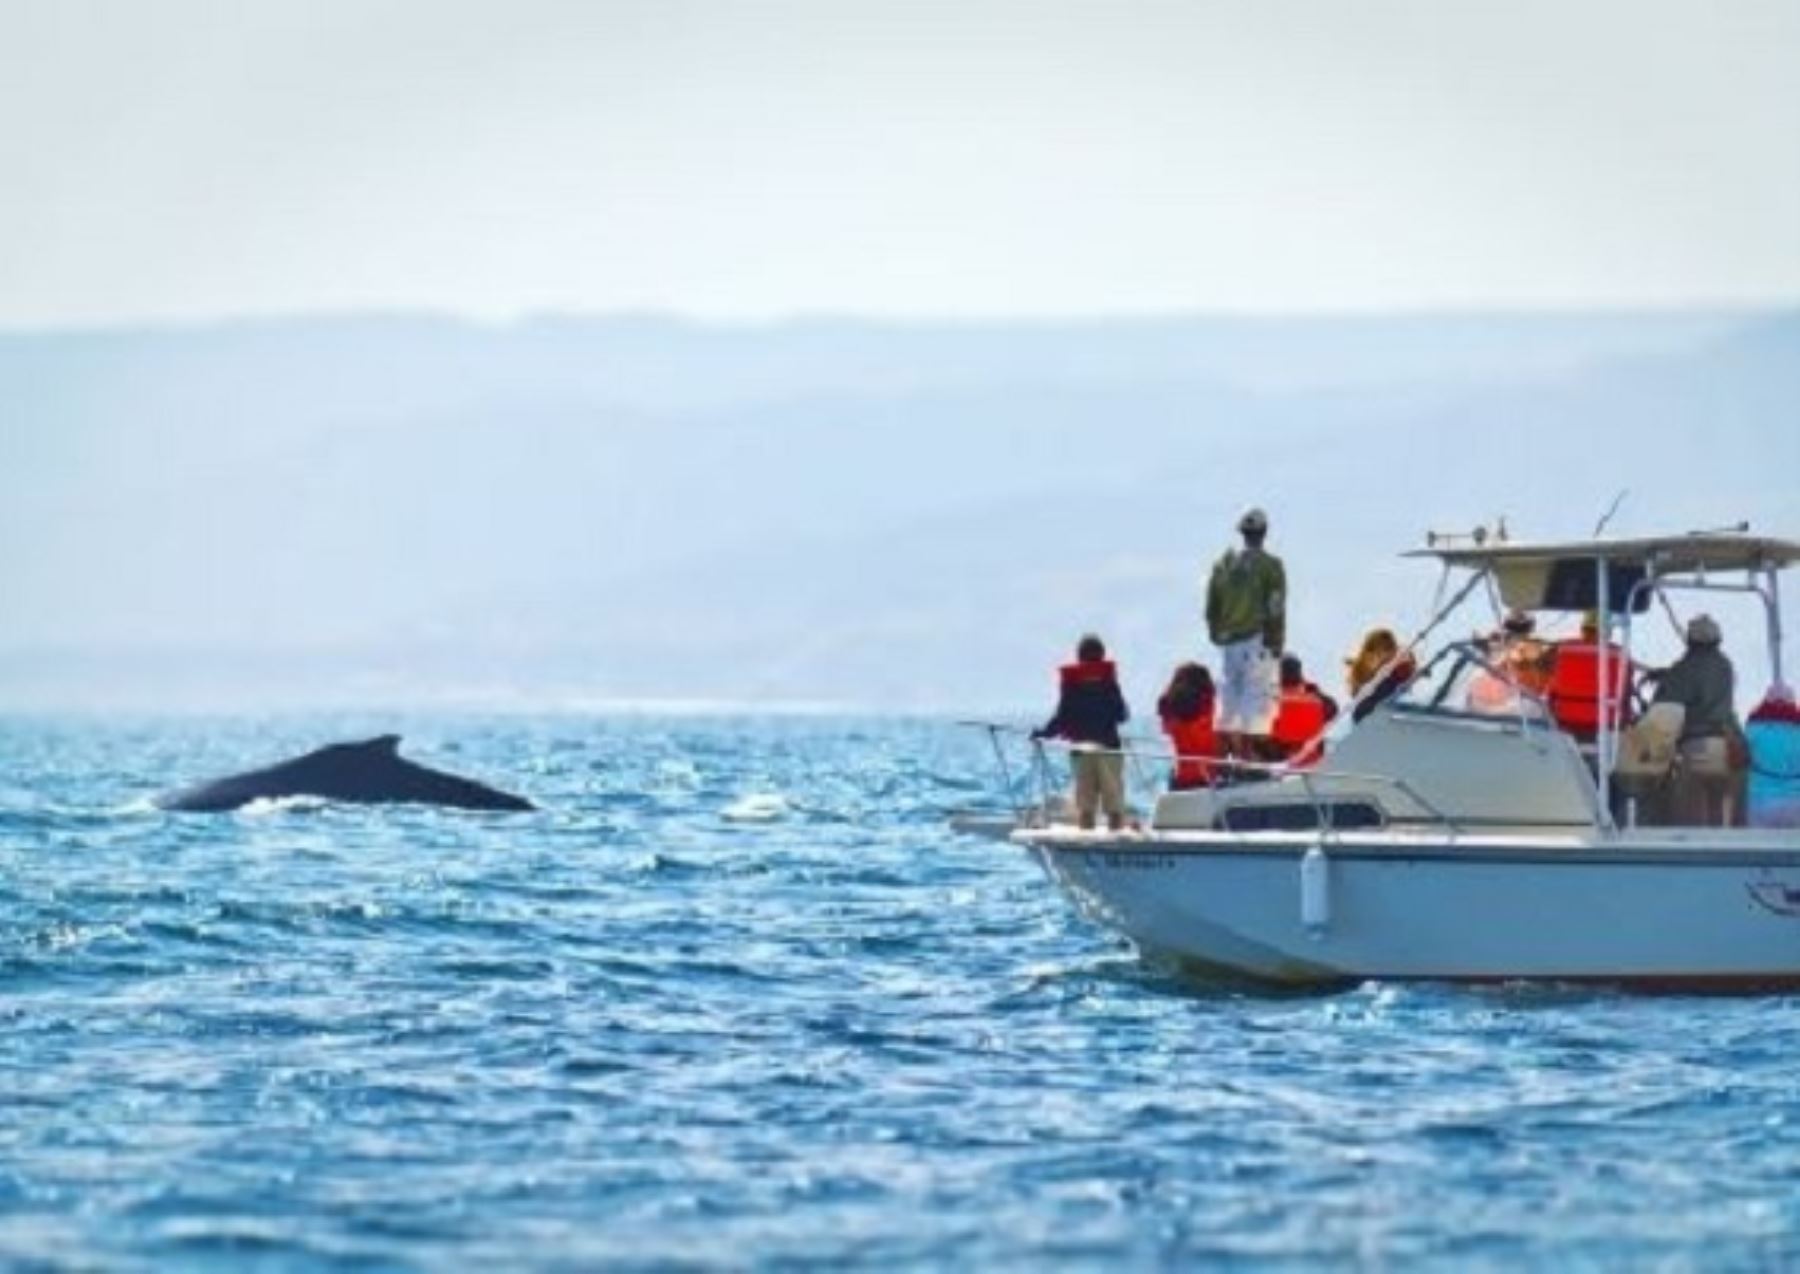 El avistamiento de ballenas jorobadas se ha convertido en un importante atractivo turístico de Piura que en esta época se encuentra en temporada alta.